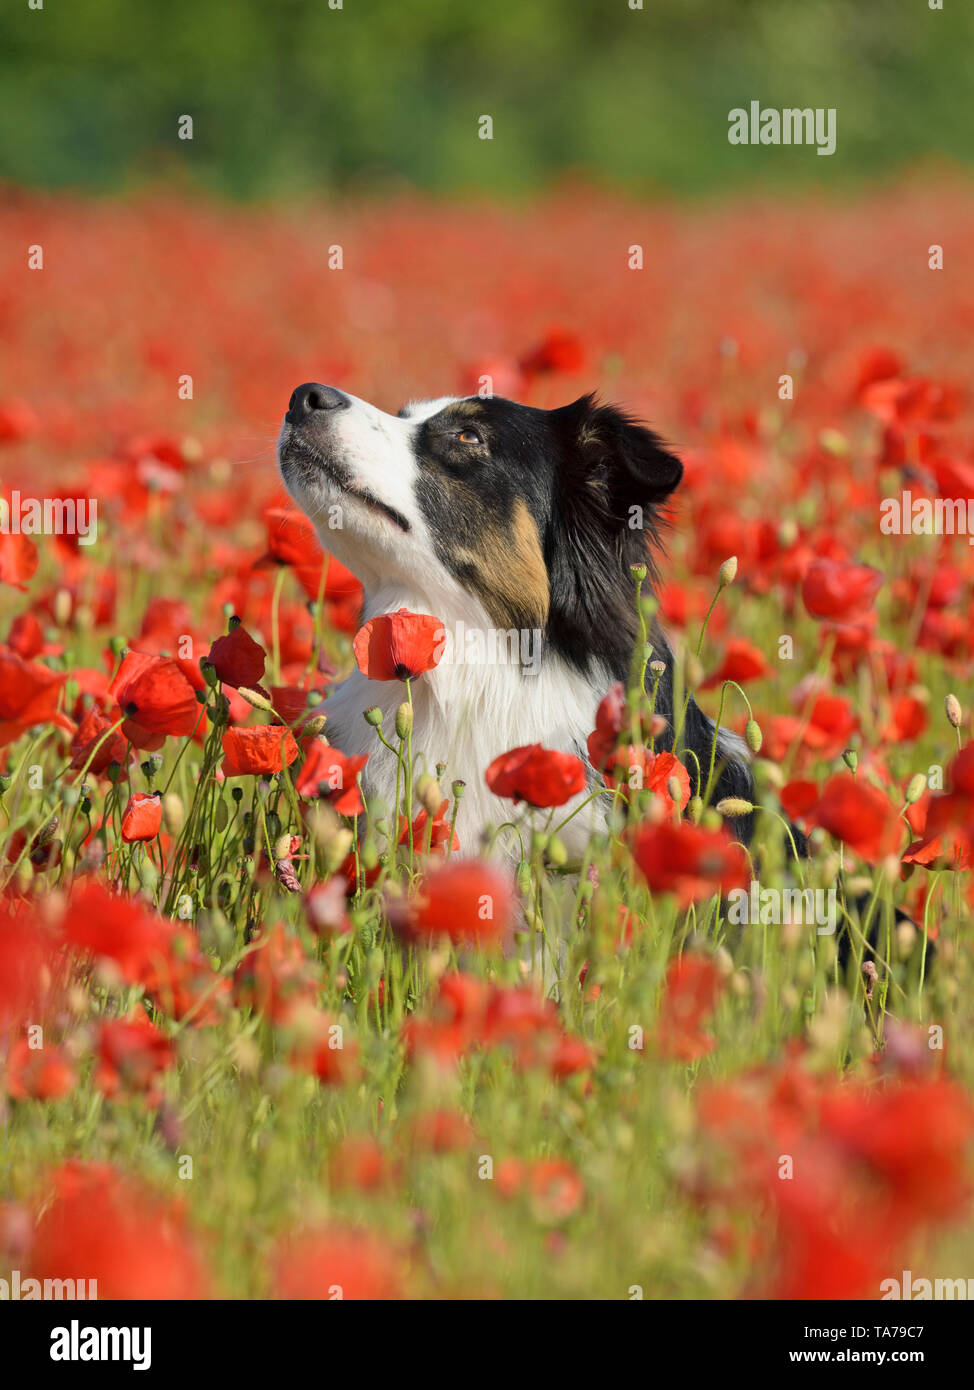 Pastore australiano. Cane adulto seduto in un campo di papavero. Germania Foto Stock